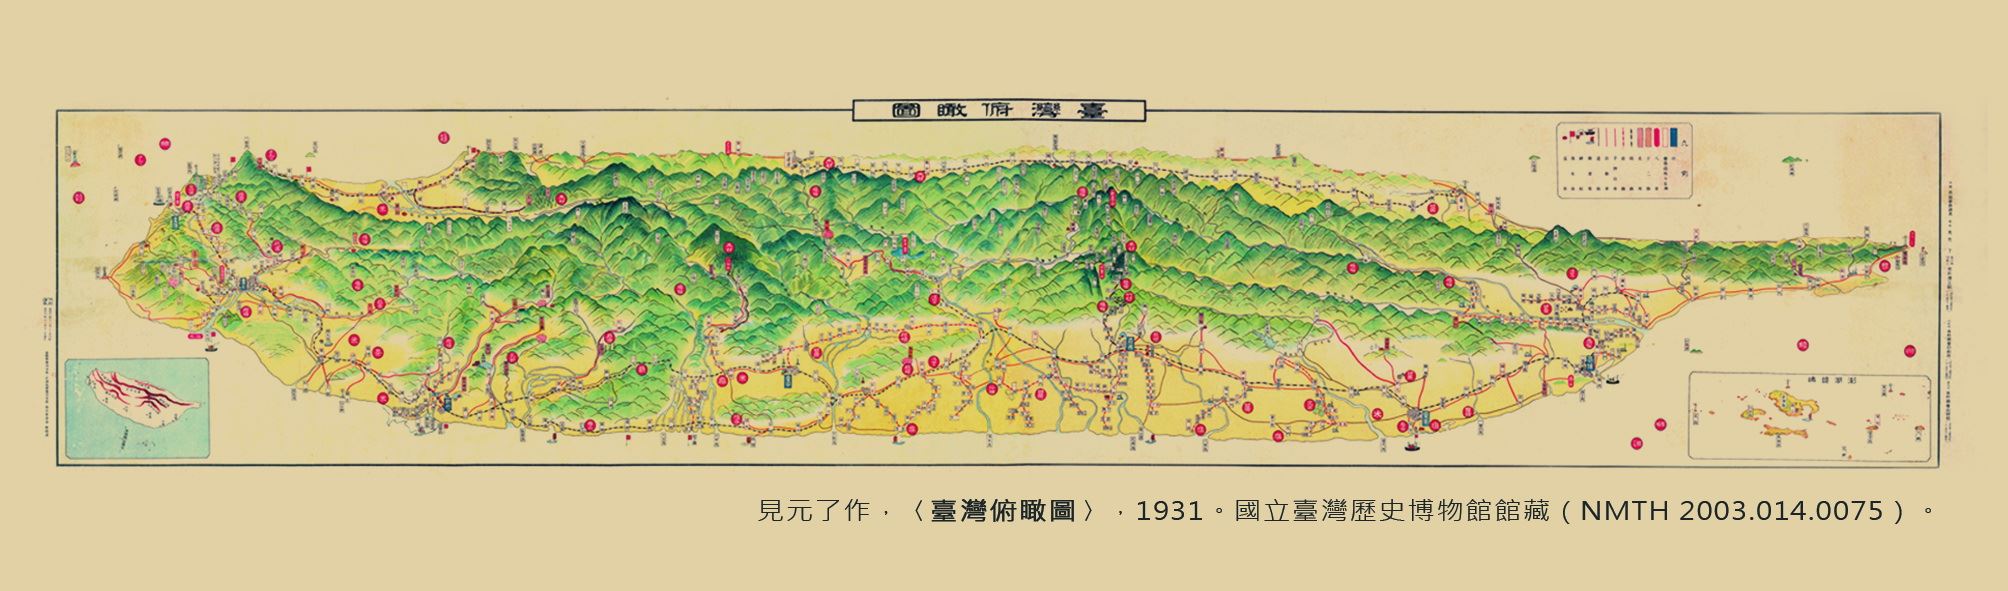 地圖書籤2(1931年-臺灣)